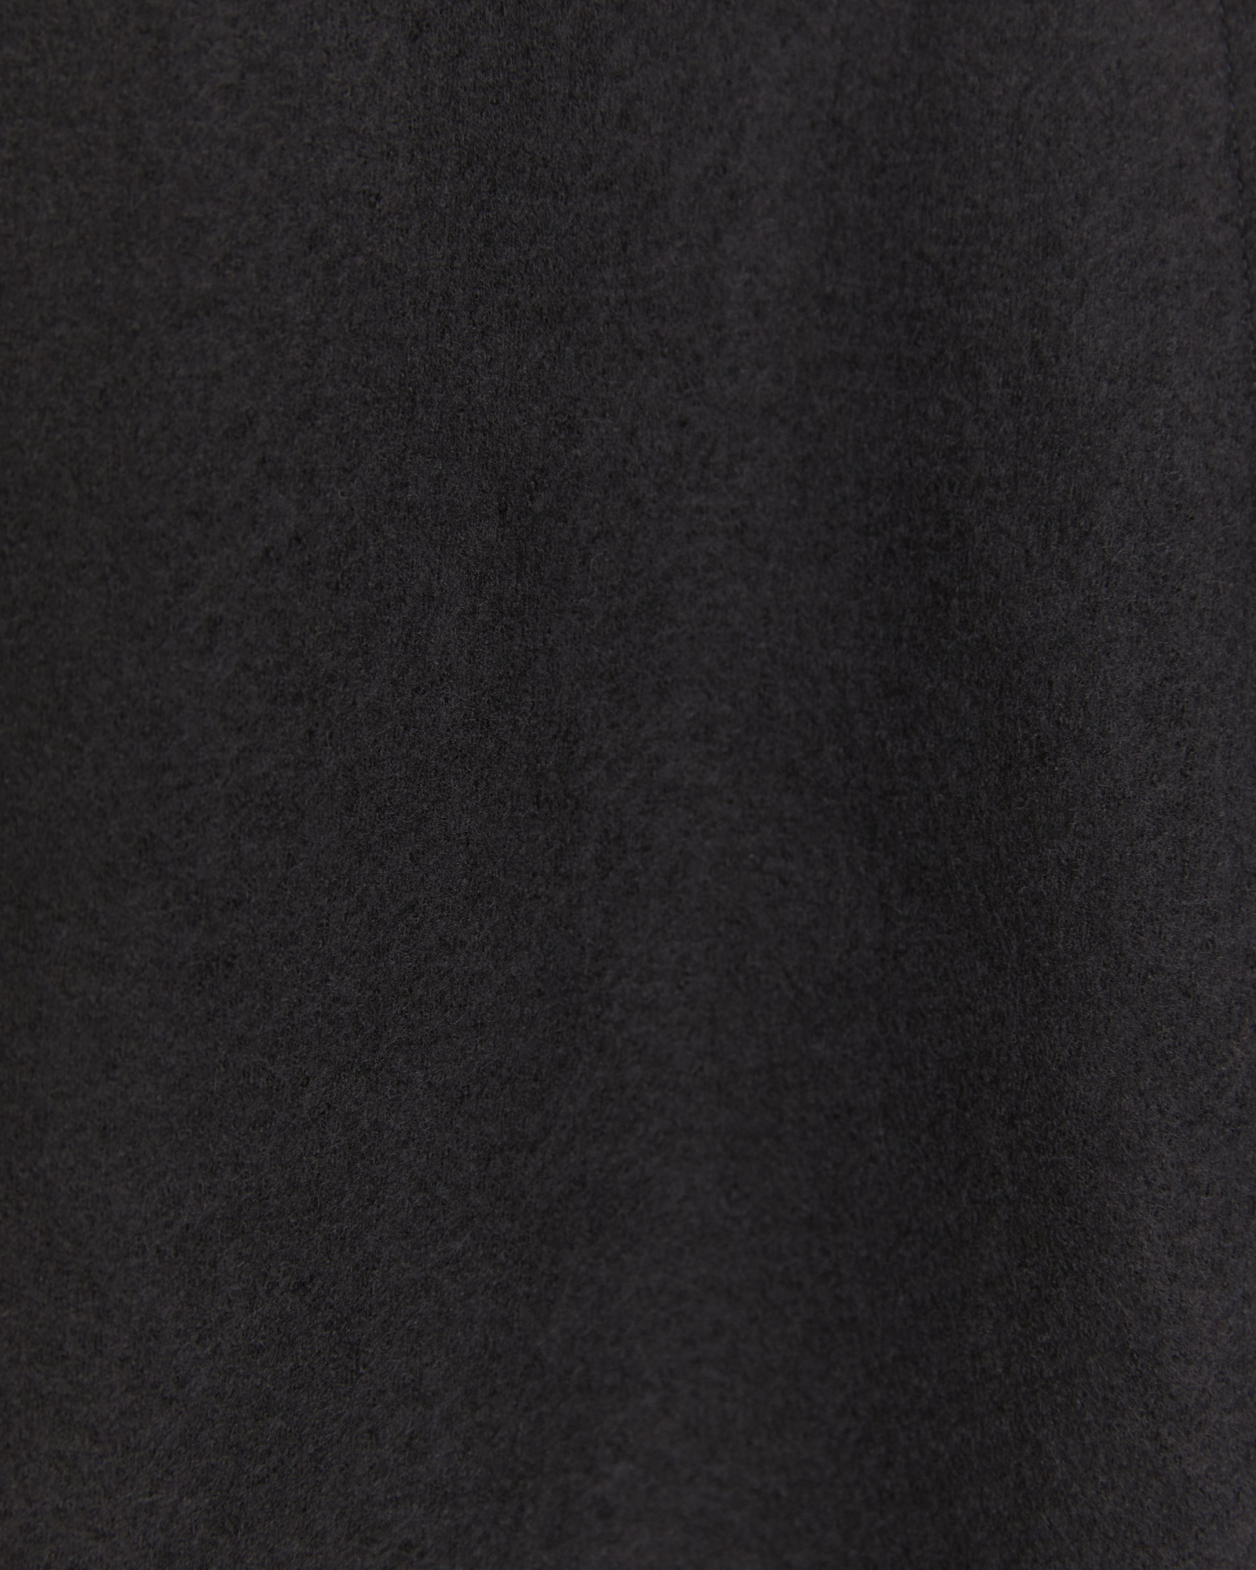 Karla Wool Longline Trench Coat in BLACK